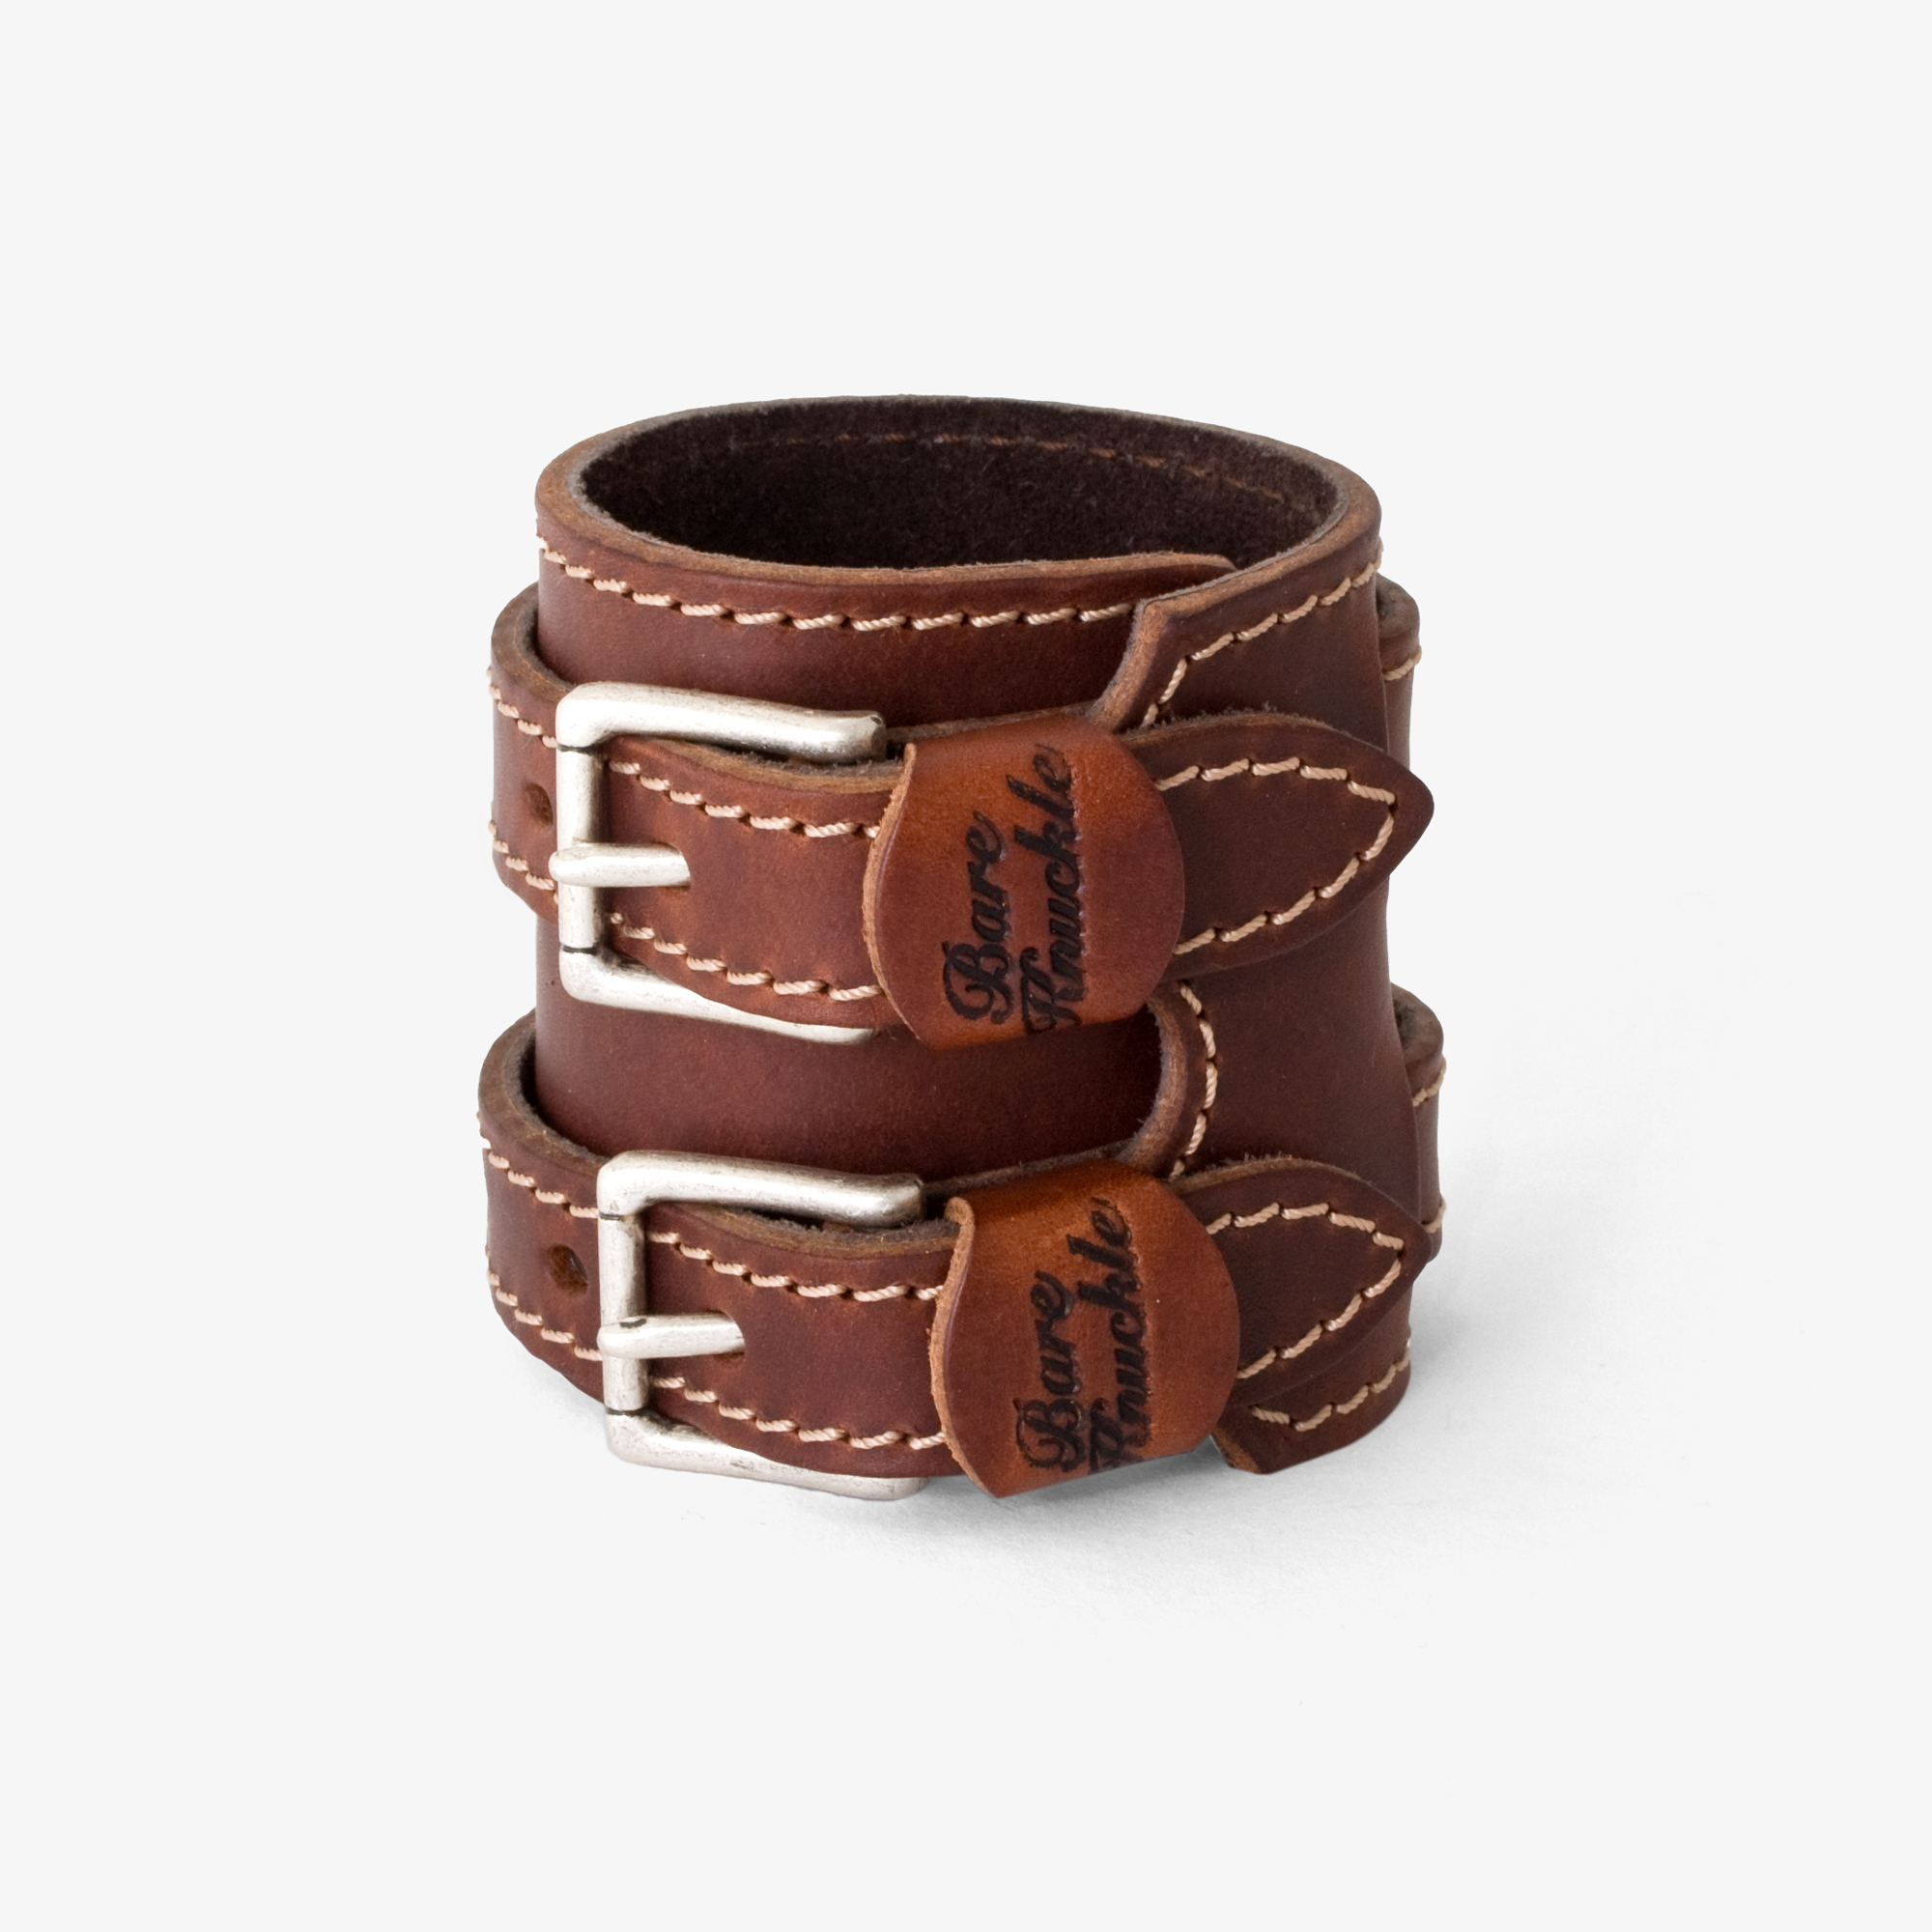 Classic Brown Leather Wrist Cuff